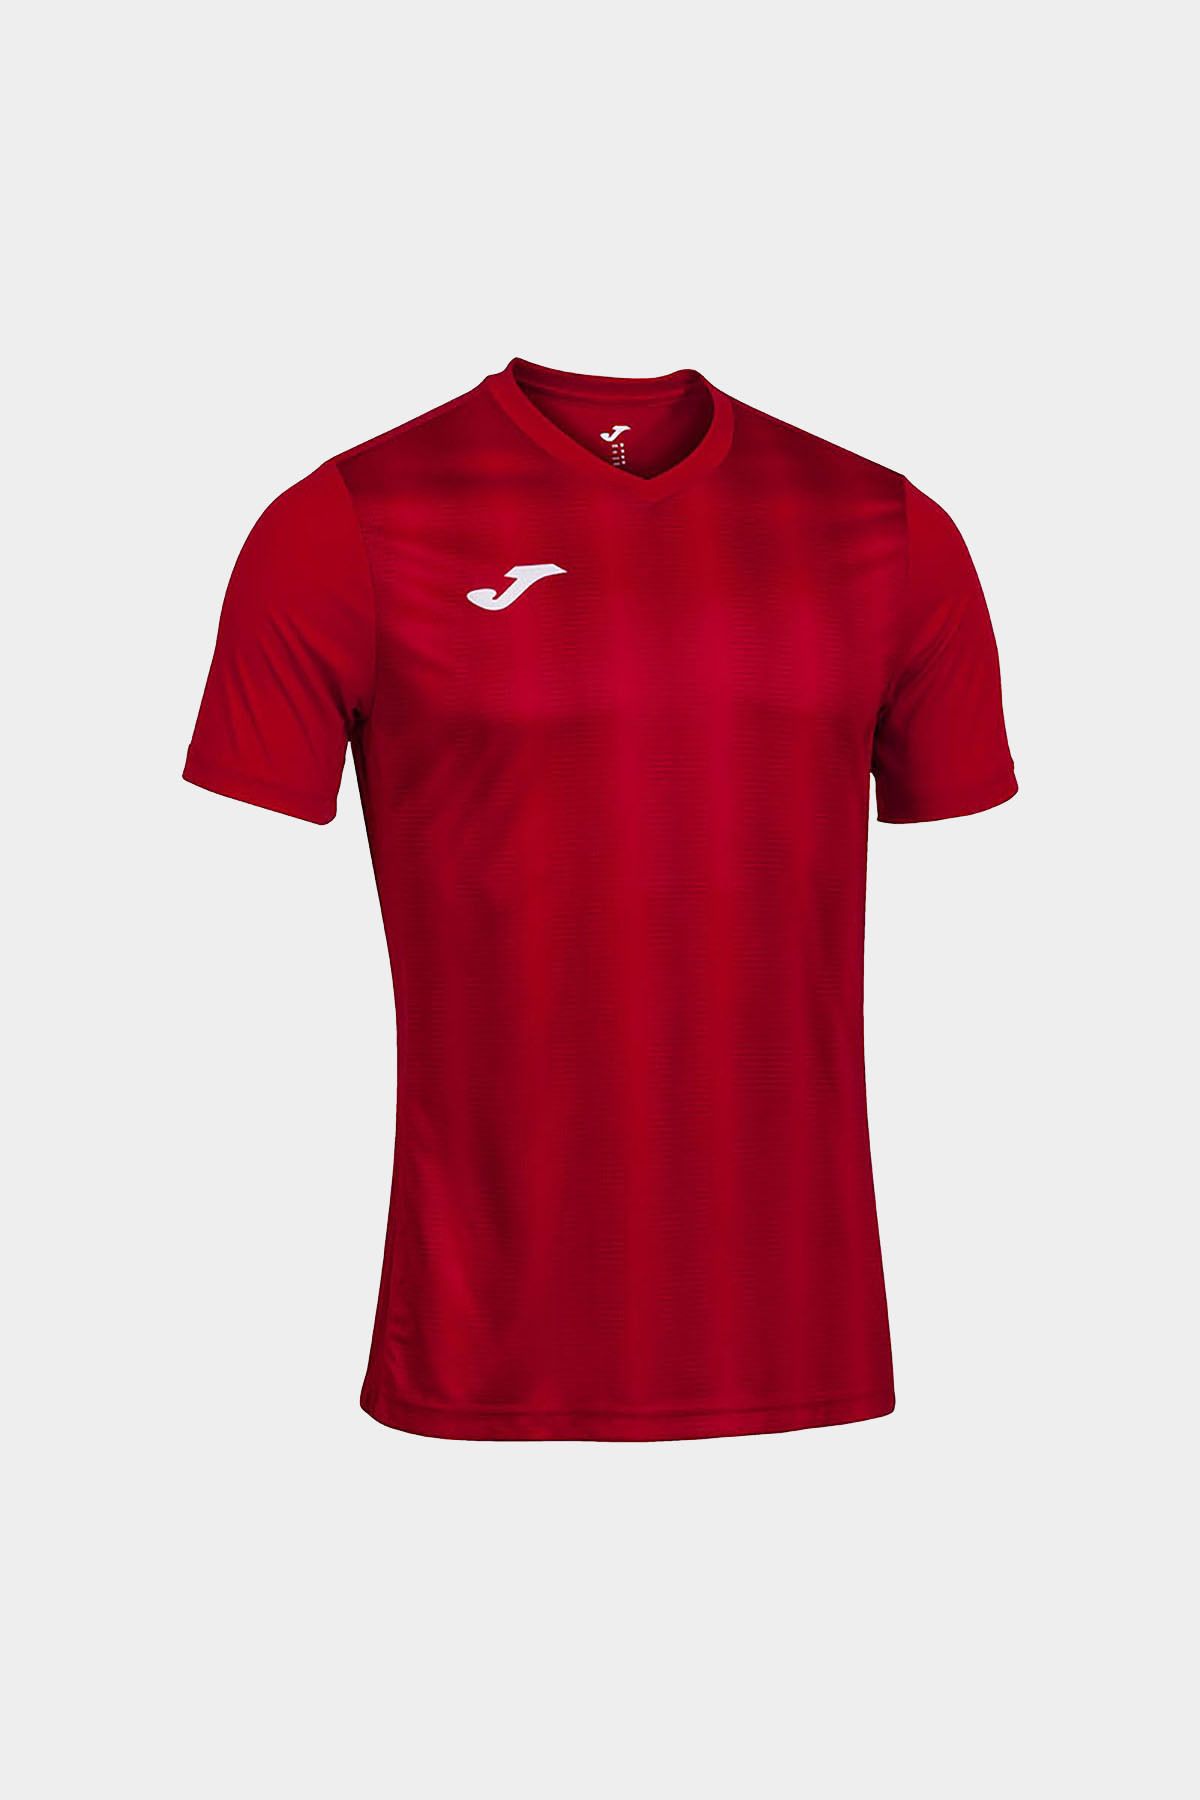 Joma Erkek Futbol Maç Forma Inter Short Sleeve Red Black 102807.601